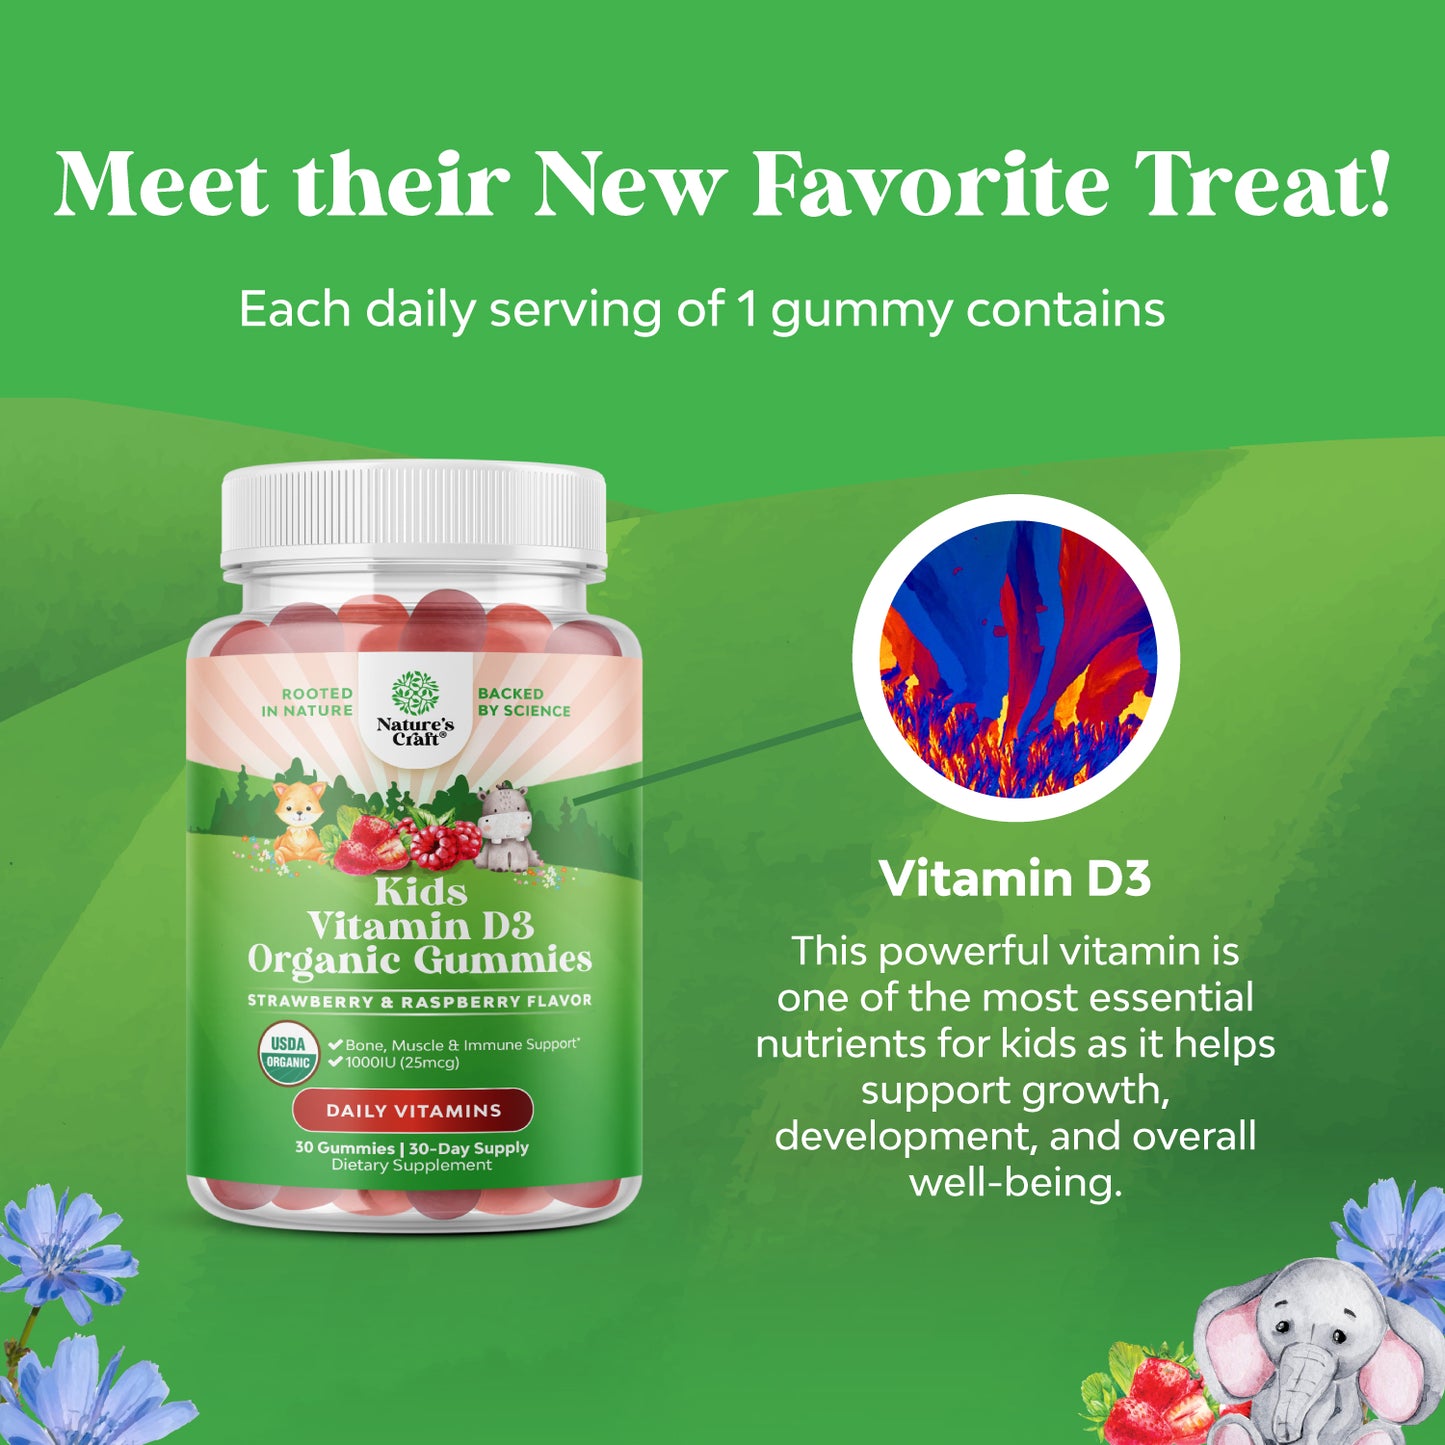 Kids Vitamin D3 Organic Gummies - 30 Gummies